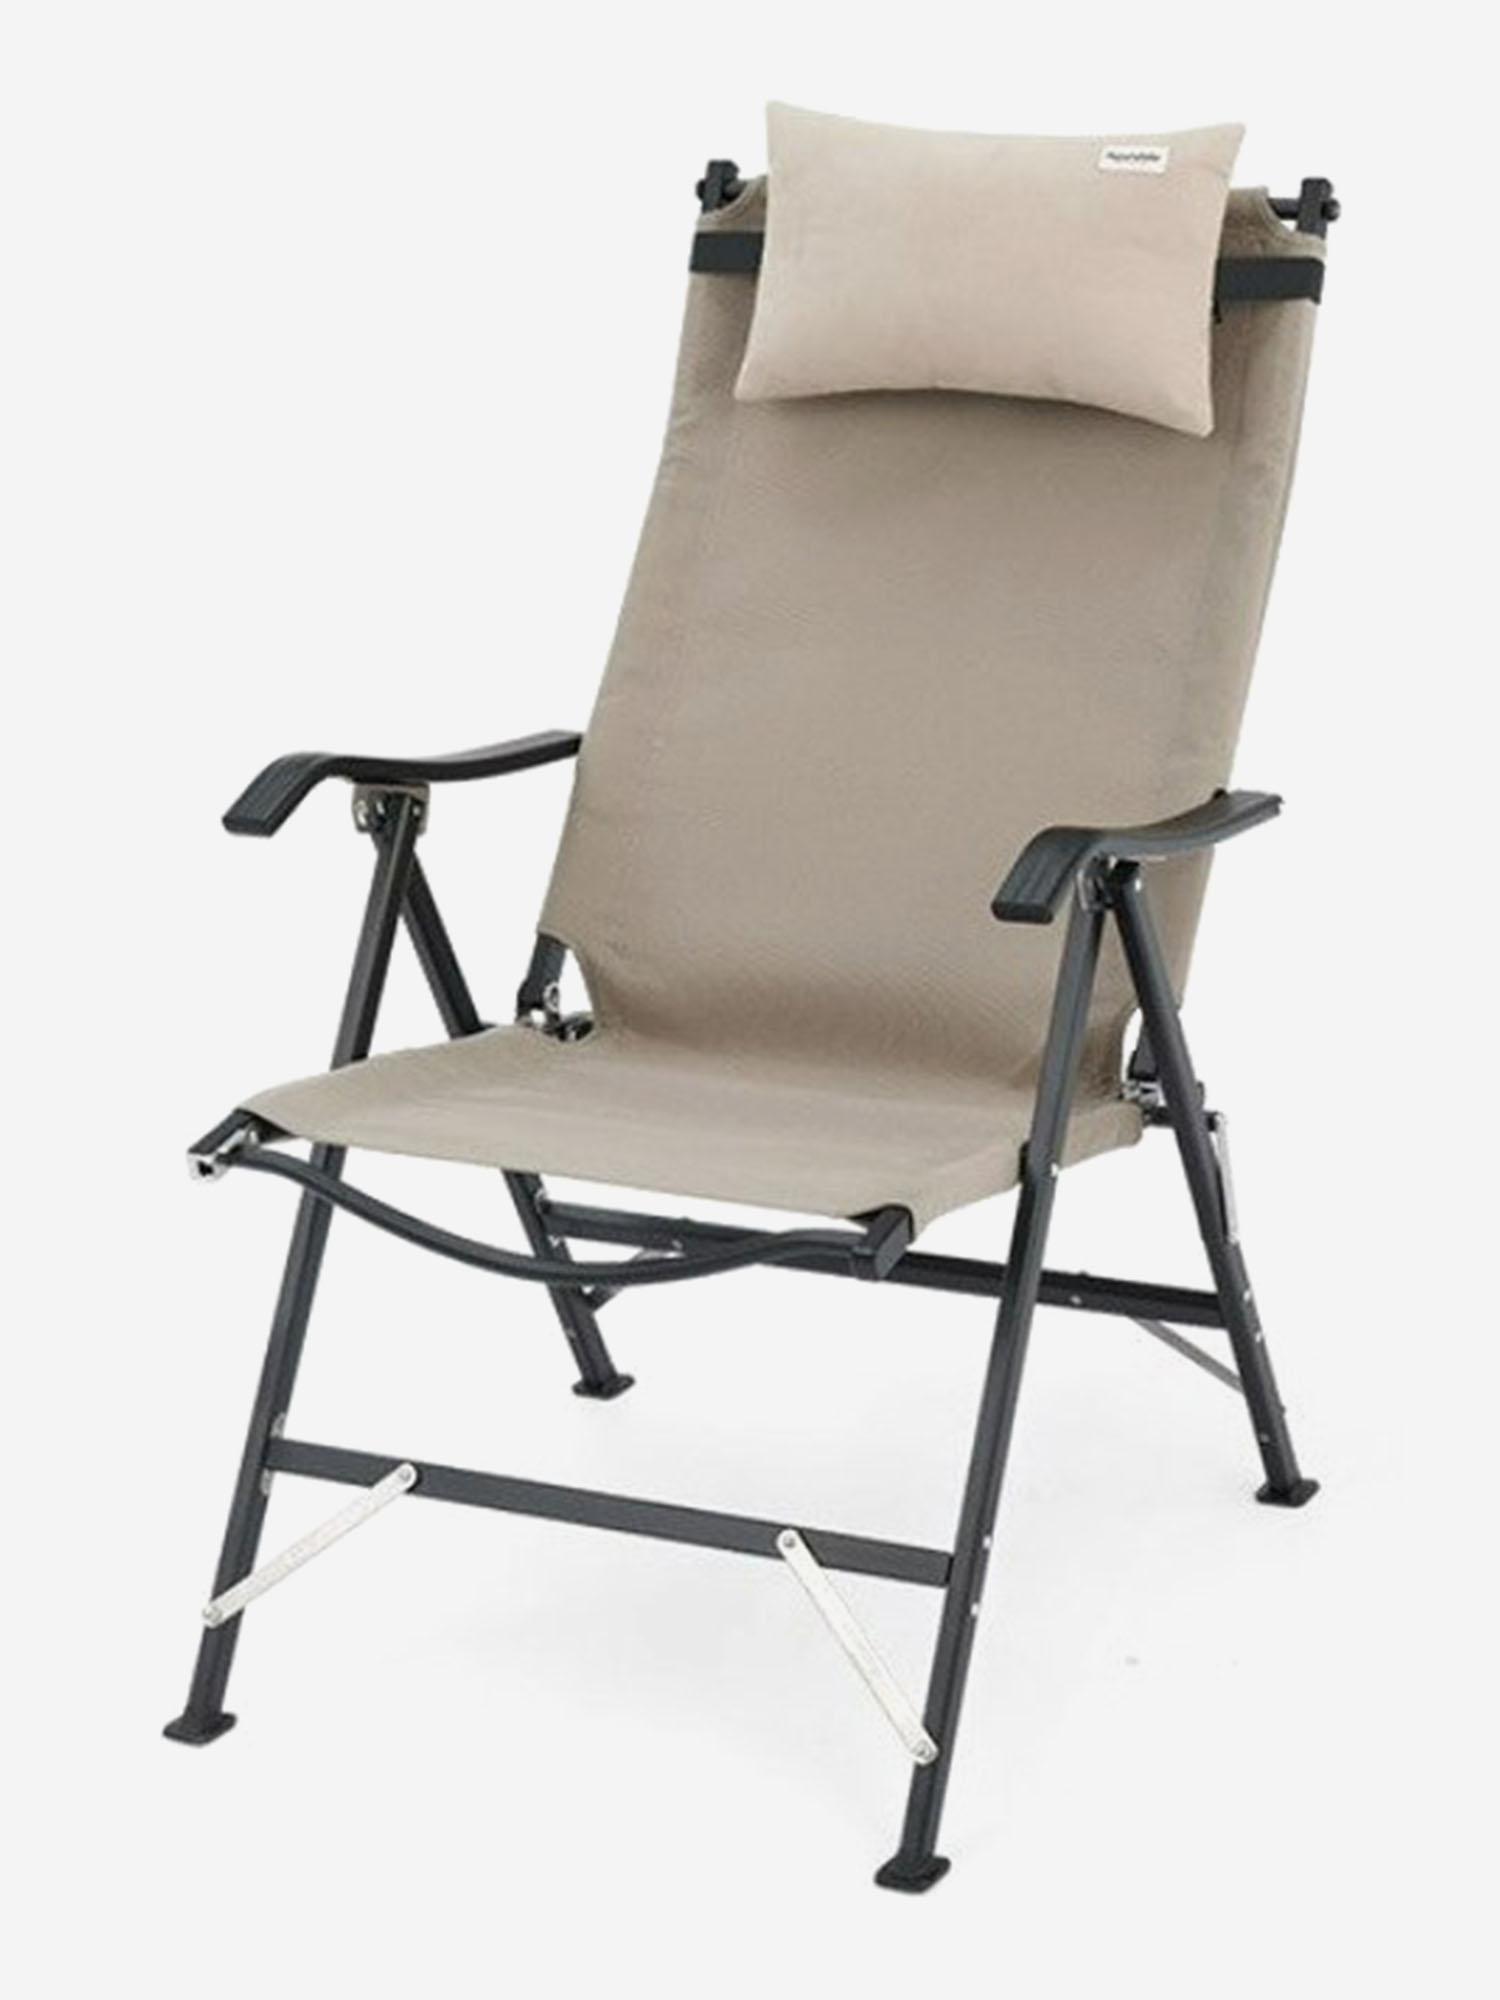 Кресло туристическое Naturehike TY10, складное, хаки, до 120 кг, Зеленый кресло туристическое naturehike mw01 складное хаки до 120 кг зеленый